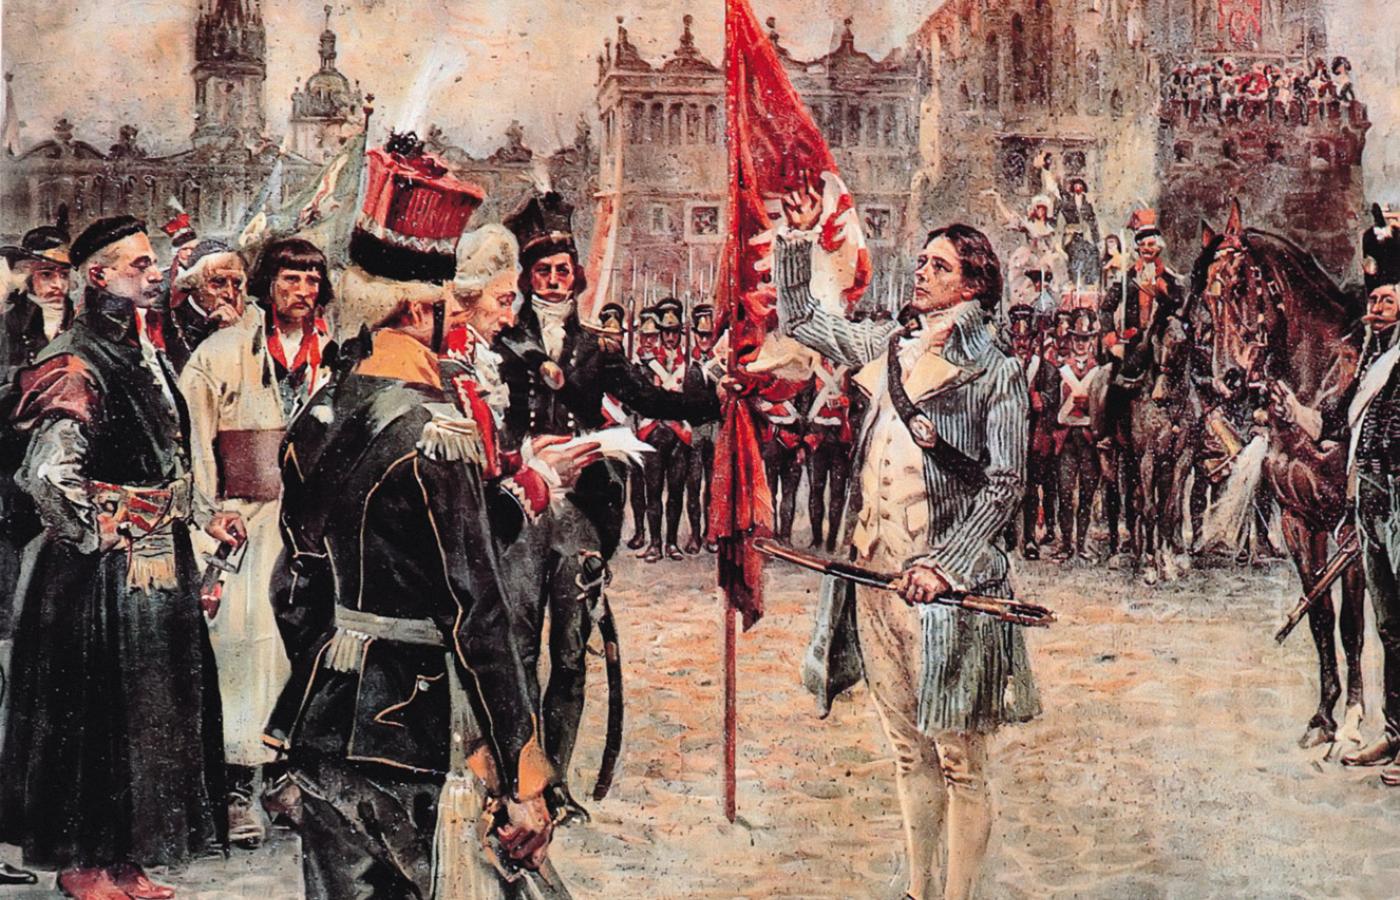 Przysięga Tadeusza Kościuszki na Rynku w Krakowie 24 marca 1794 r. w obecności przedstawicieli różnych stanów.